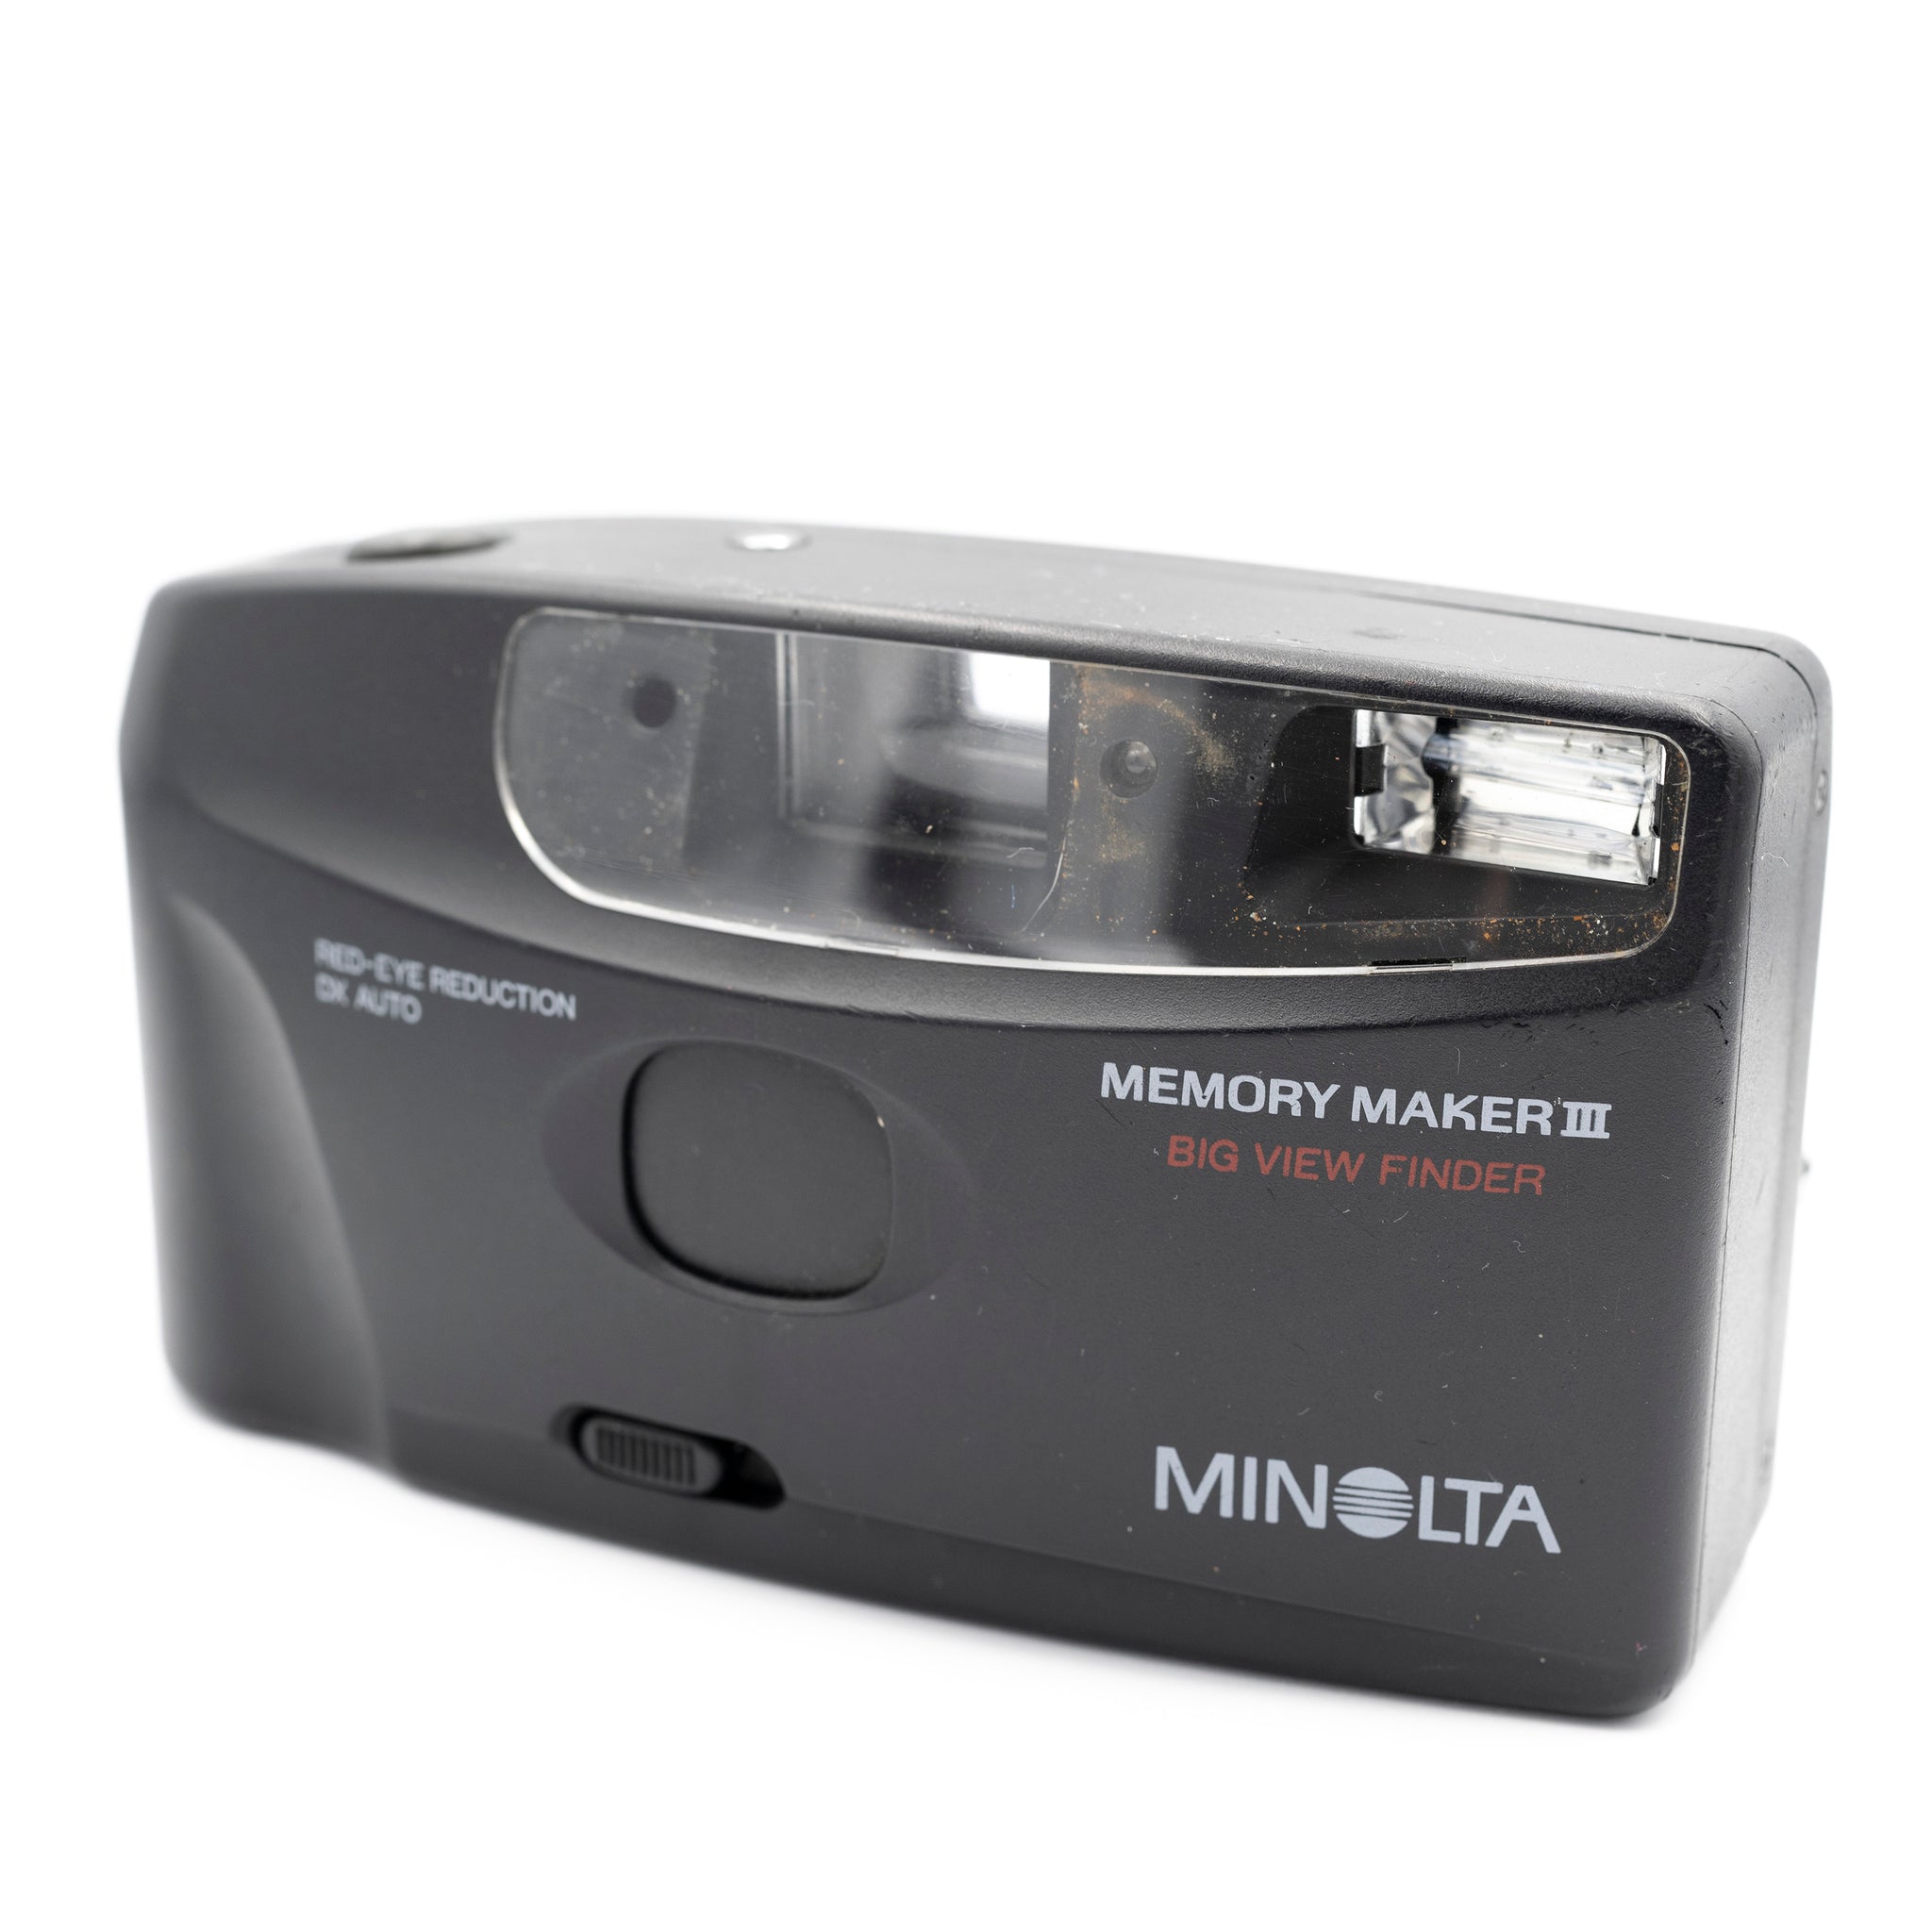 Minolta Memory Maker III